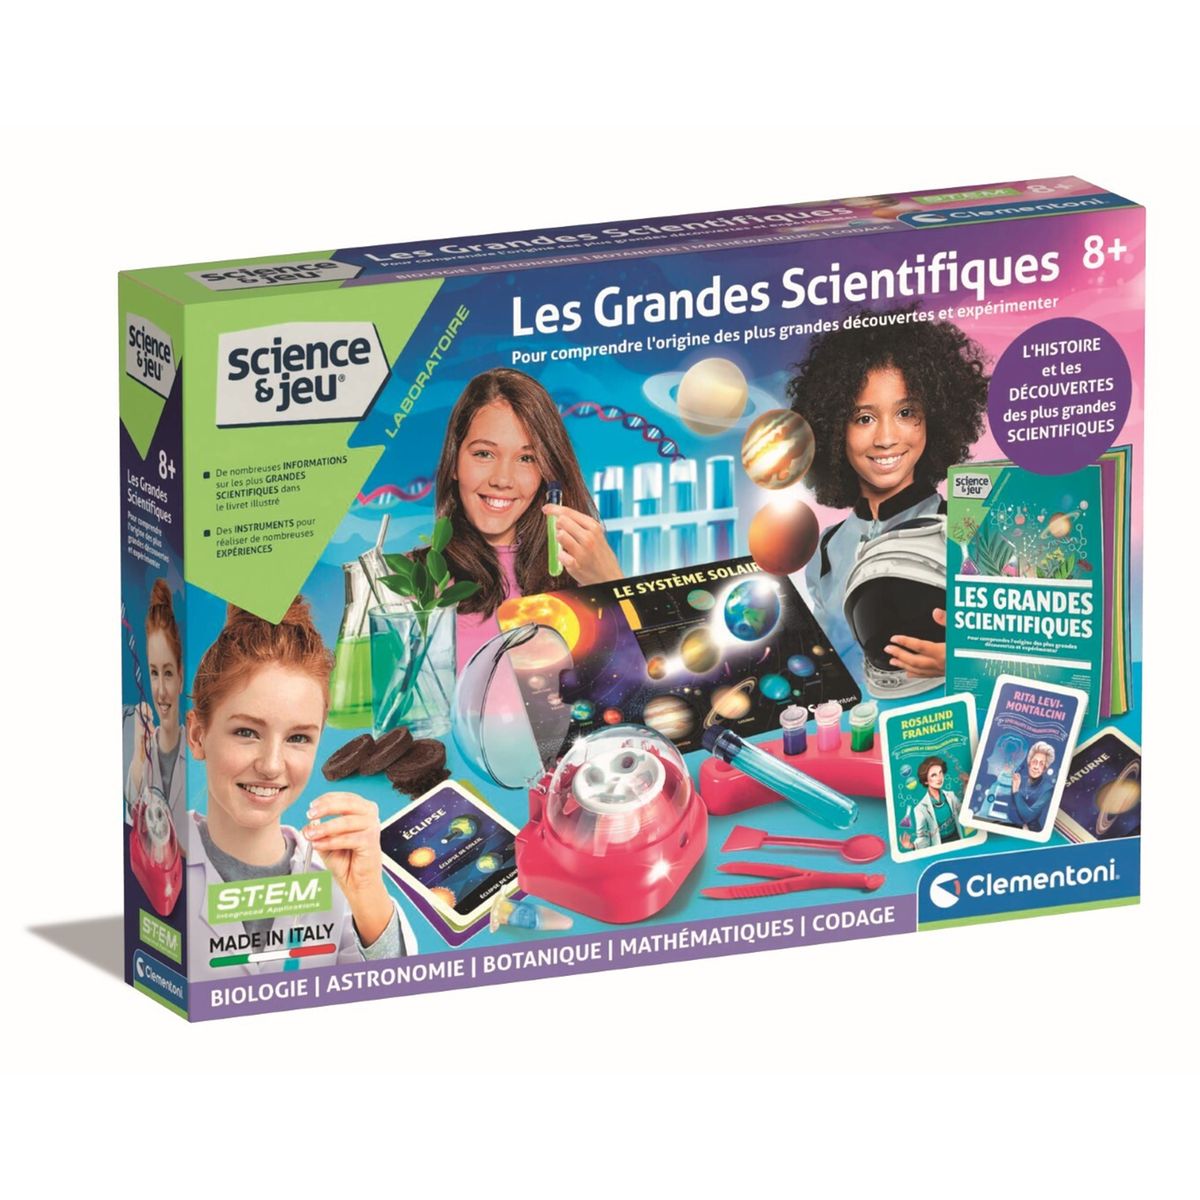 Mini Sciences Chimie - Jeux Expériences scientifiques - Jeux scientifiques  - STEM - Jeux éducatifs